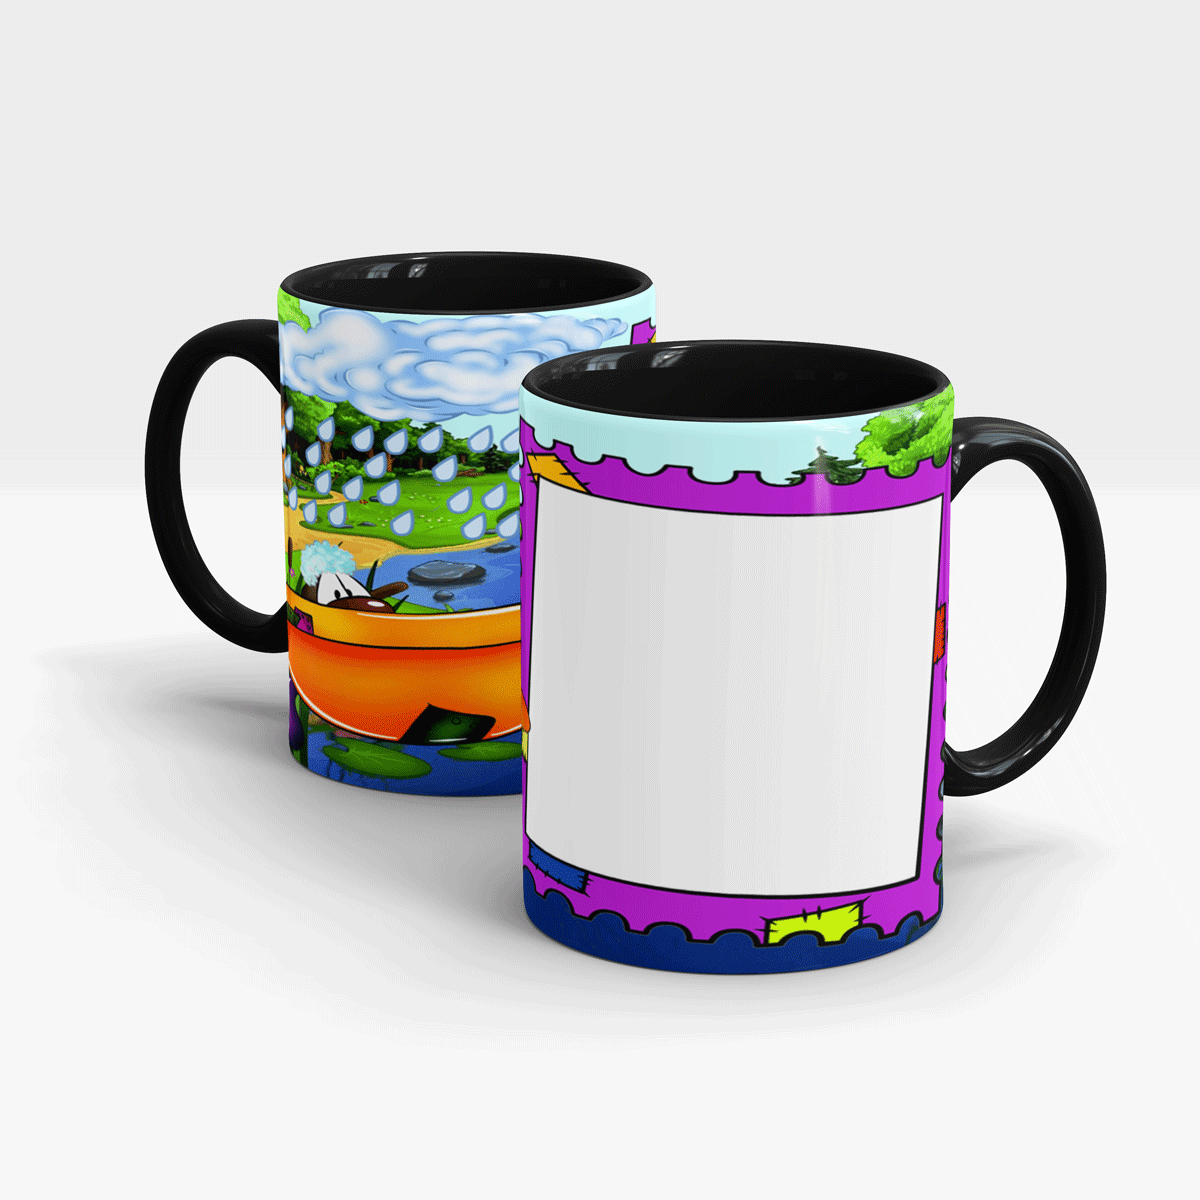 custom-printed-mug-for-kids-design-your-own-online-gift-shopping-in